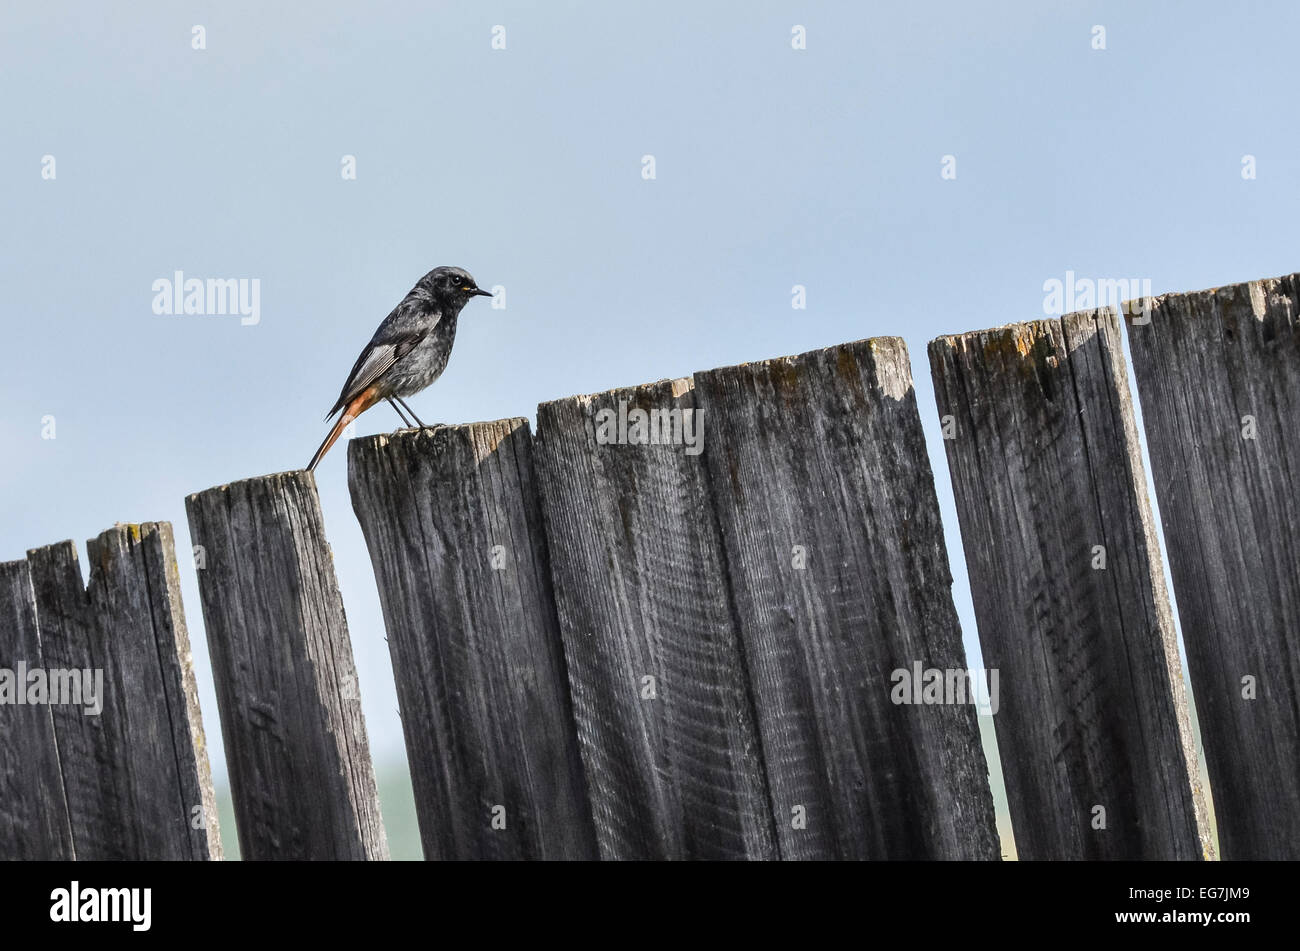 Little songbird, a male Black Redstart (Phoenicurus ochruros) on a rural wooden plank. Stock Photo